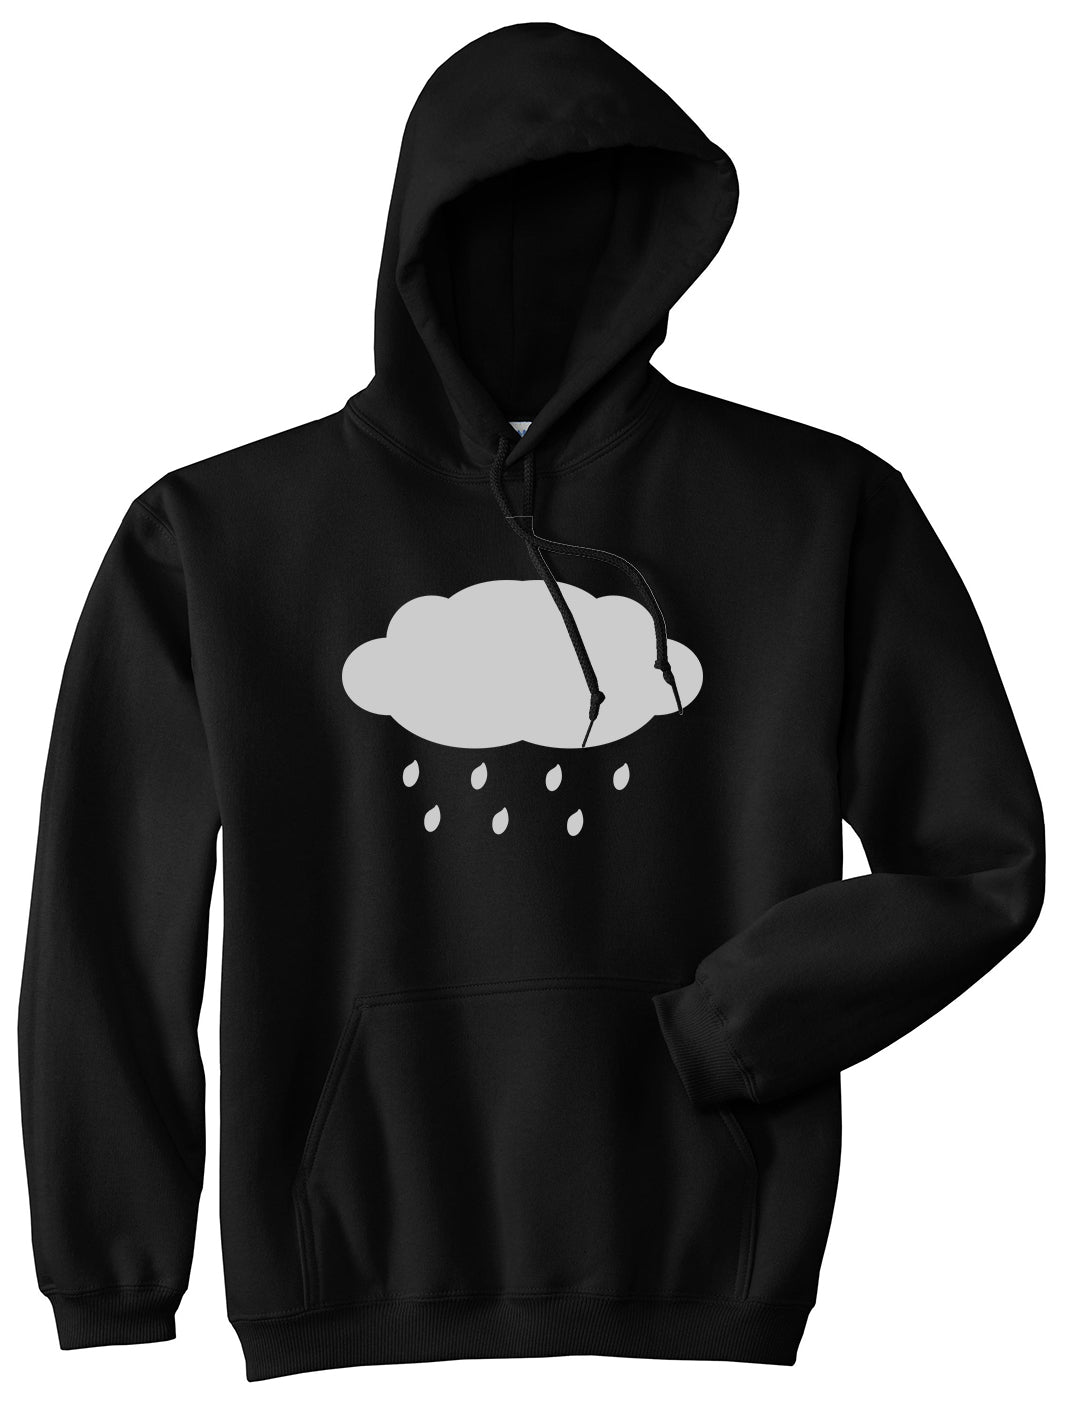 Rain Cloud Black Pullover Hoodie by Kings Of NY